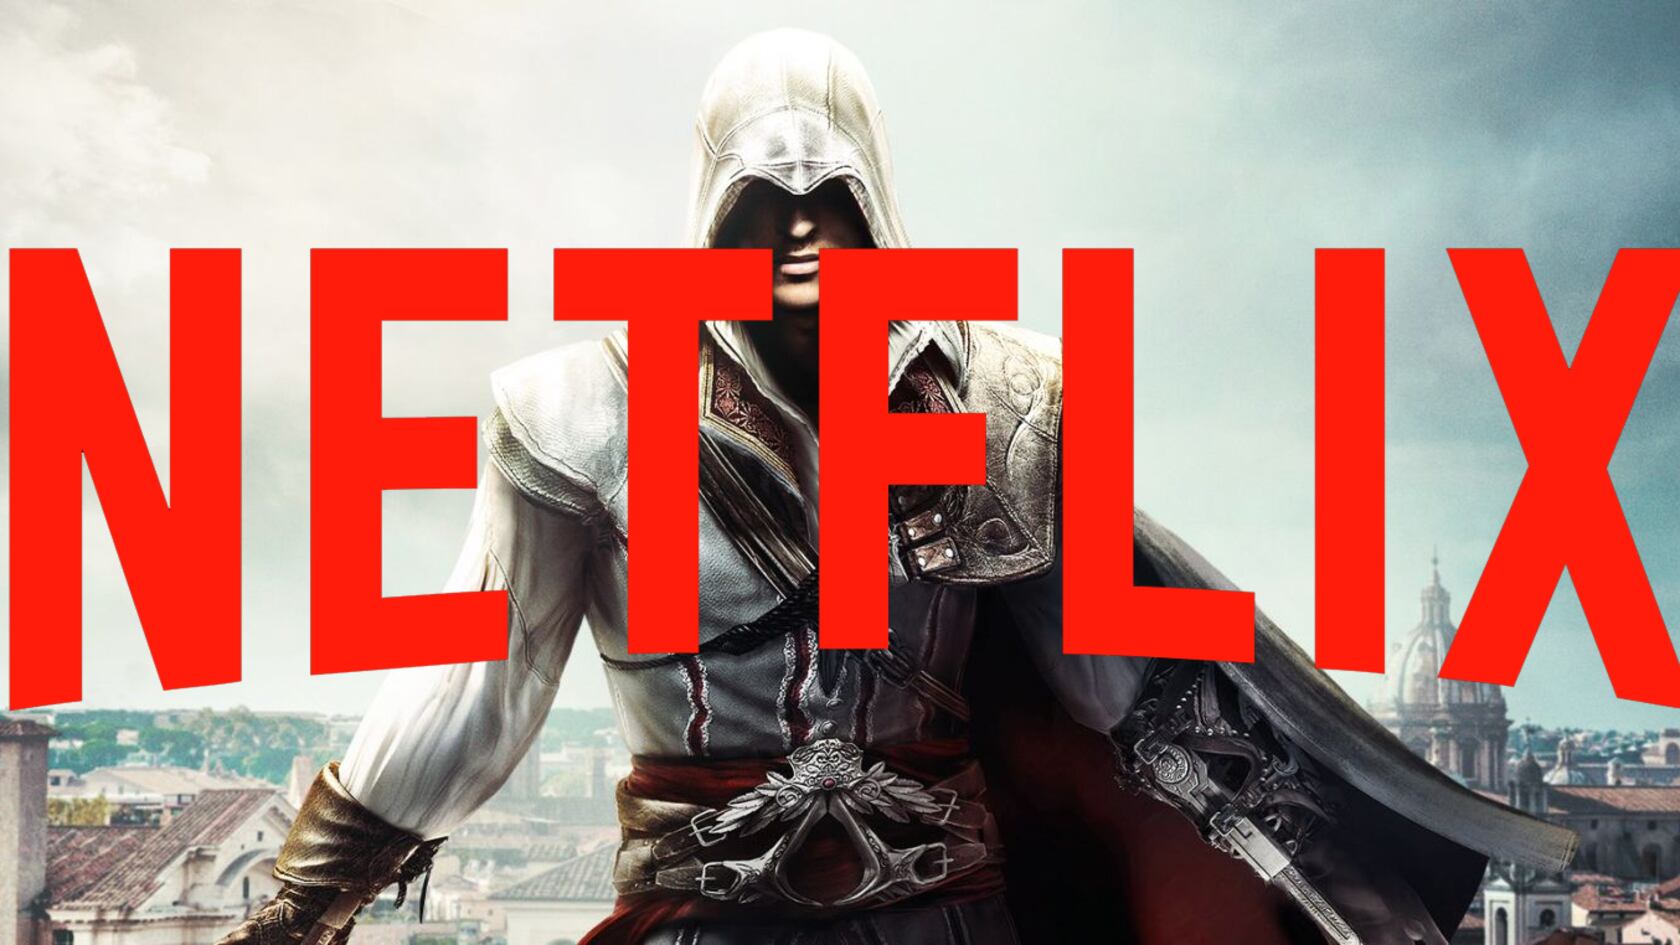 La app de Netflix dará acceso exclusivo con tu suscripción a una secuela de Valiant Hearts, a Mighty Quest for Epic Loot y a un juego de Assassin’s Creed.